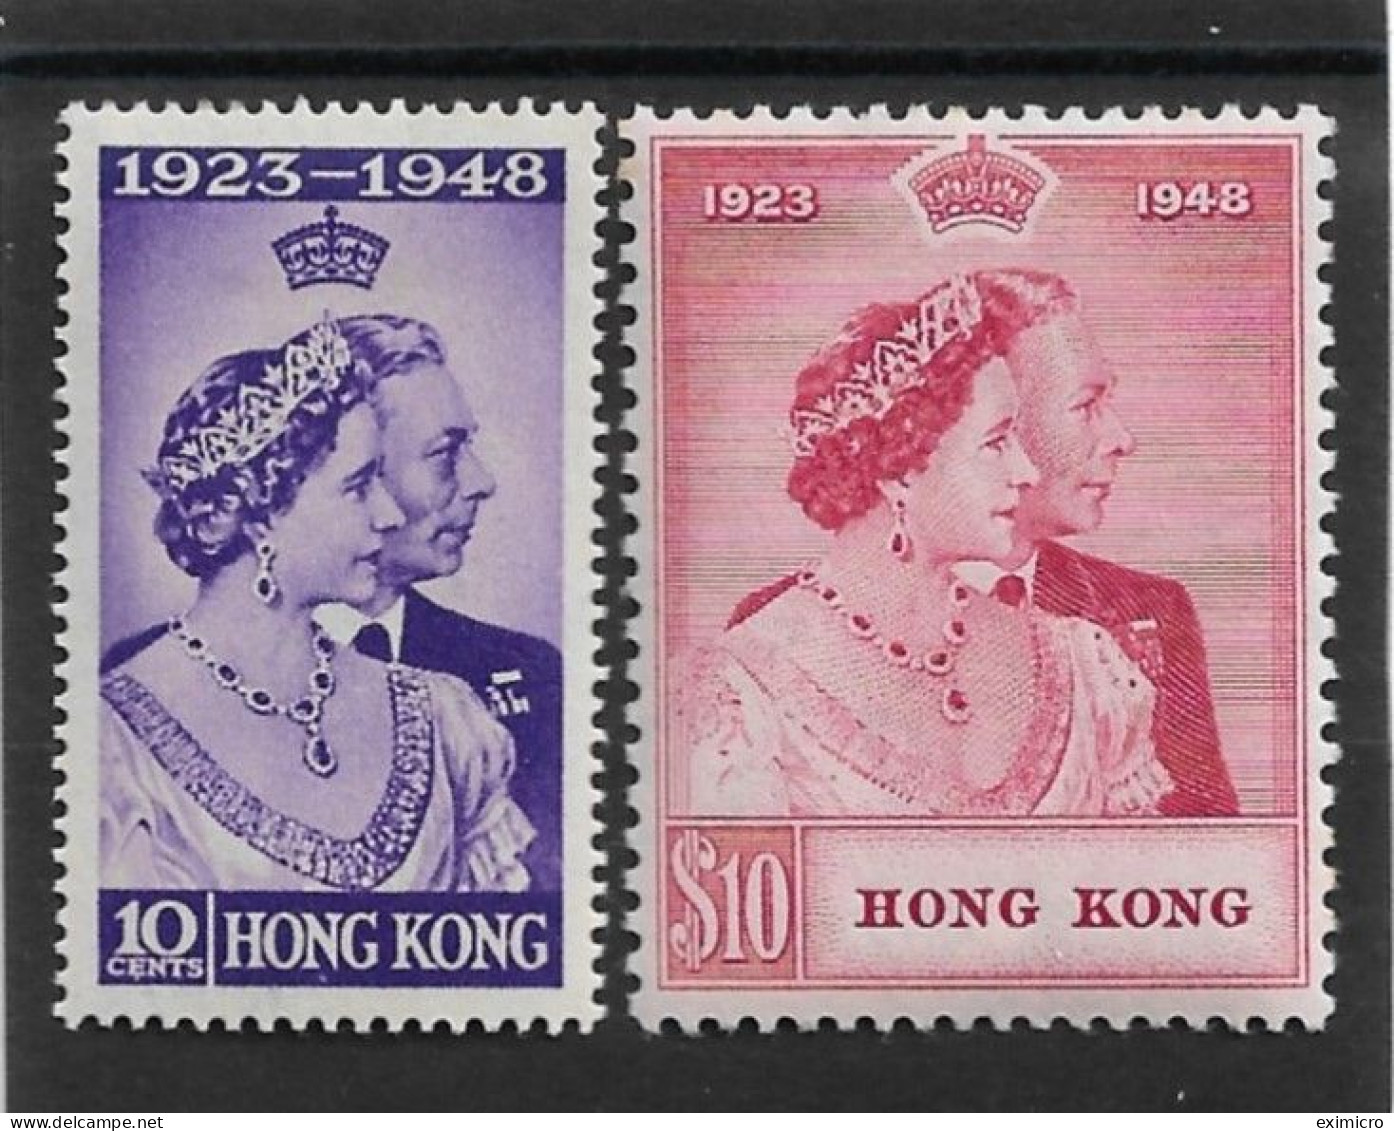 HONG KONG 1948 SILVER WEDDING SET LIGHTLY MOUNTED MINT Cat £278+ - Ungebraucht